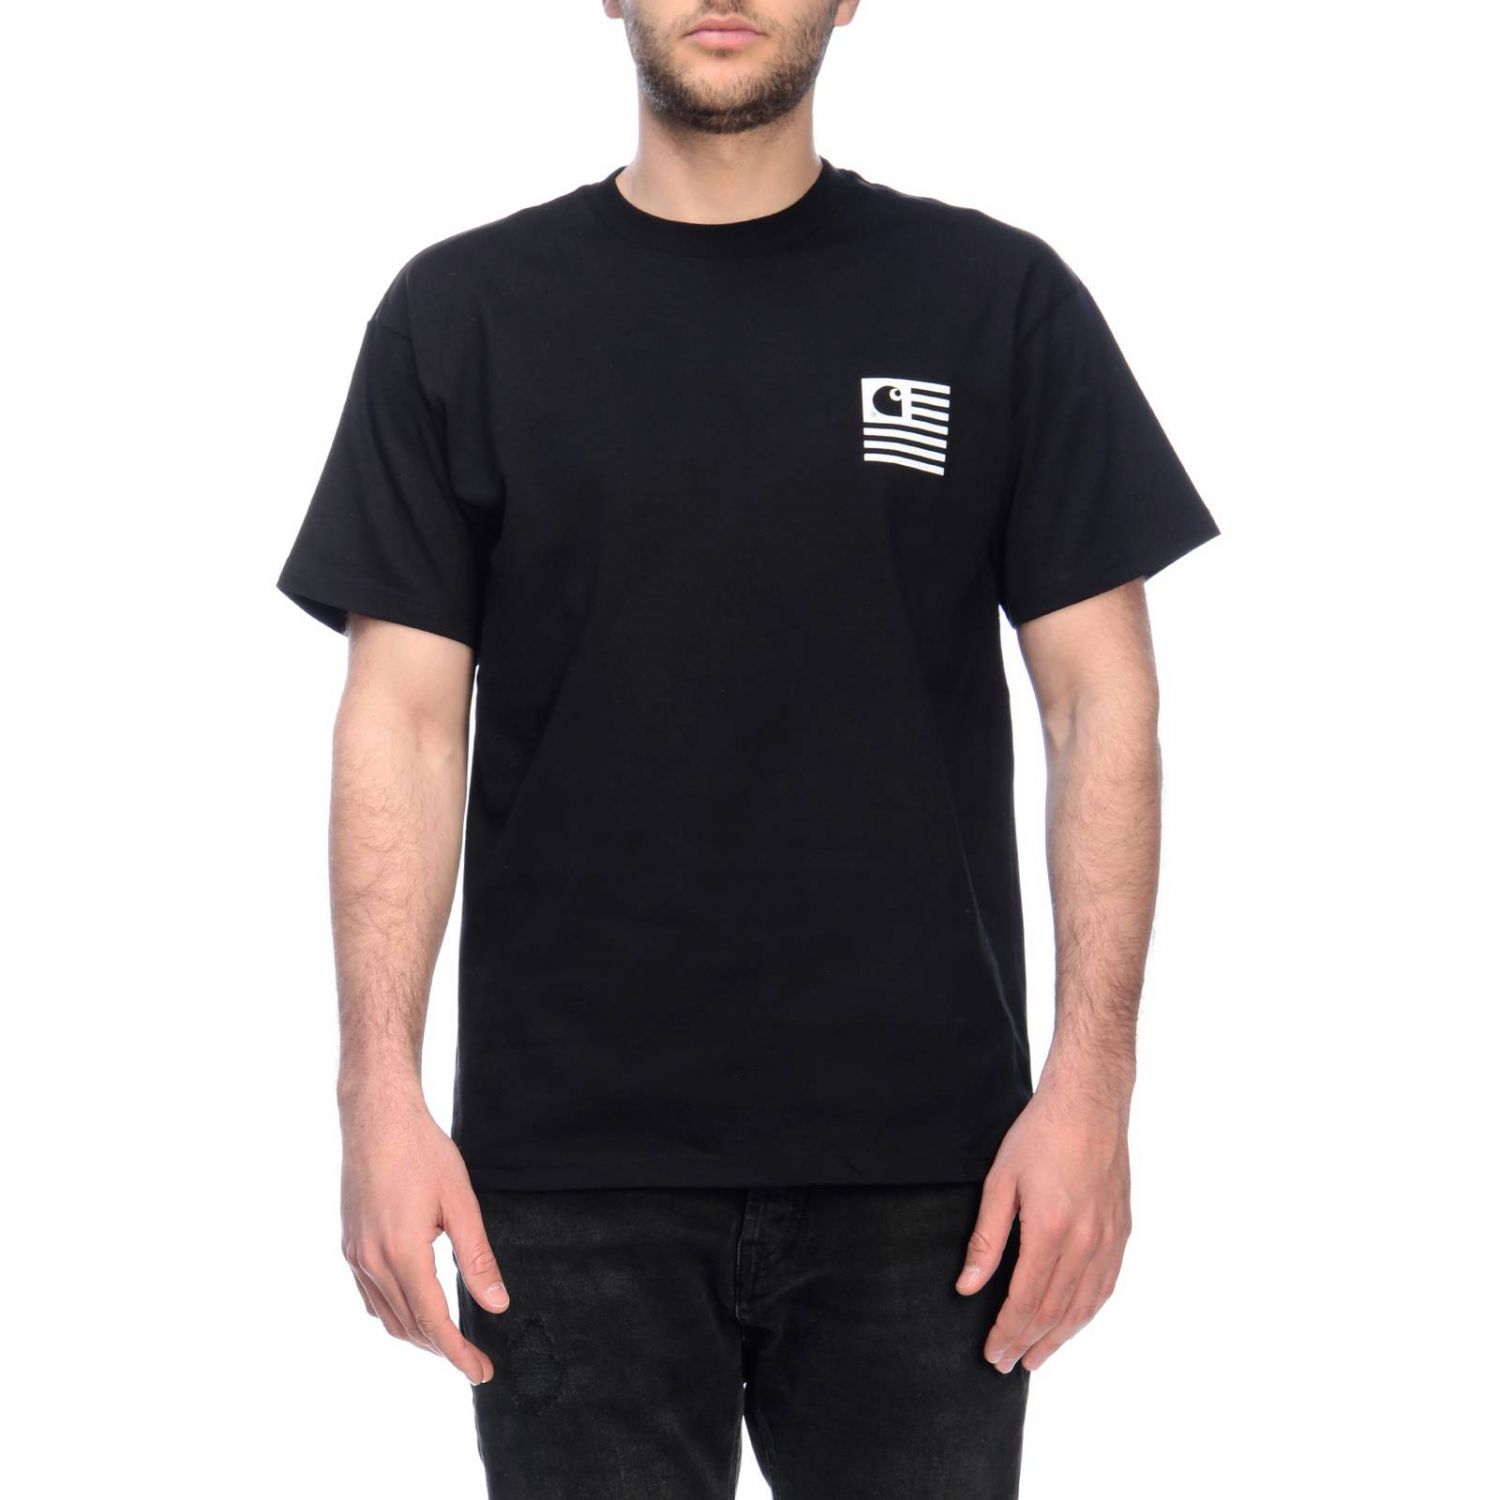 Carhartt Outlet: T-shirt men - Black | T-Shirt Carhartt I02640903 ...